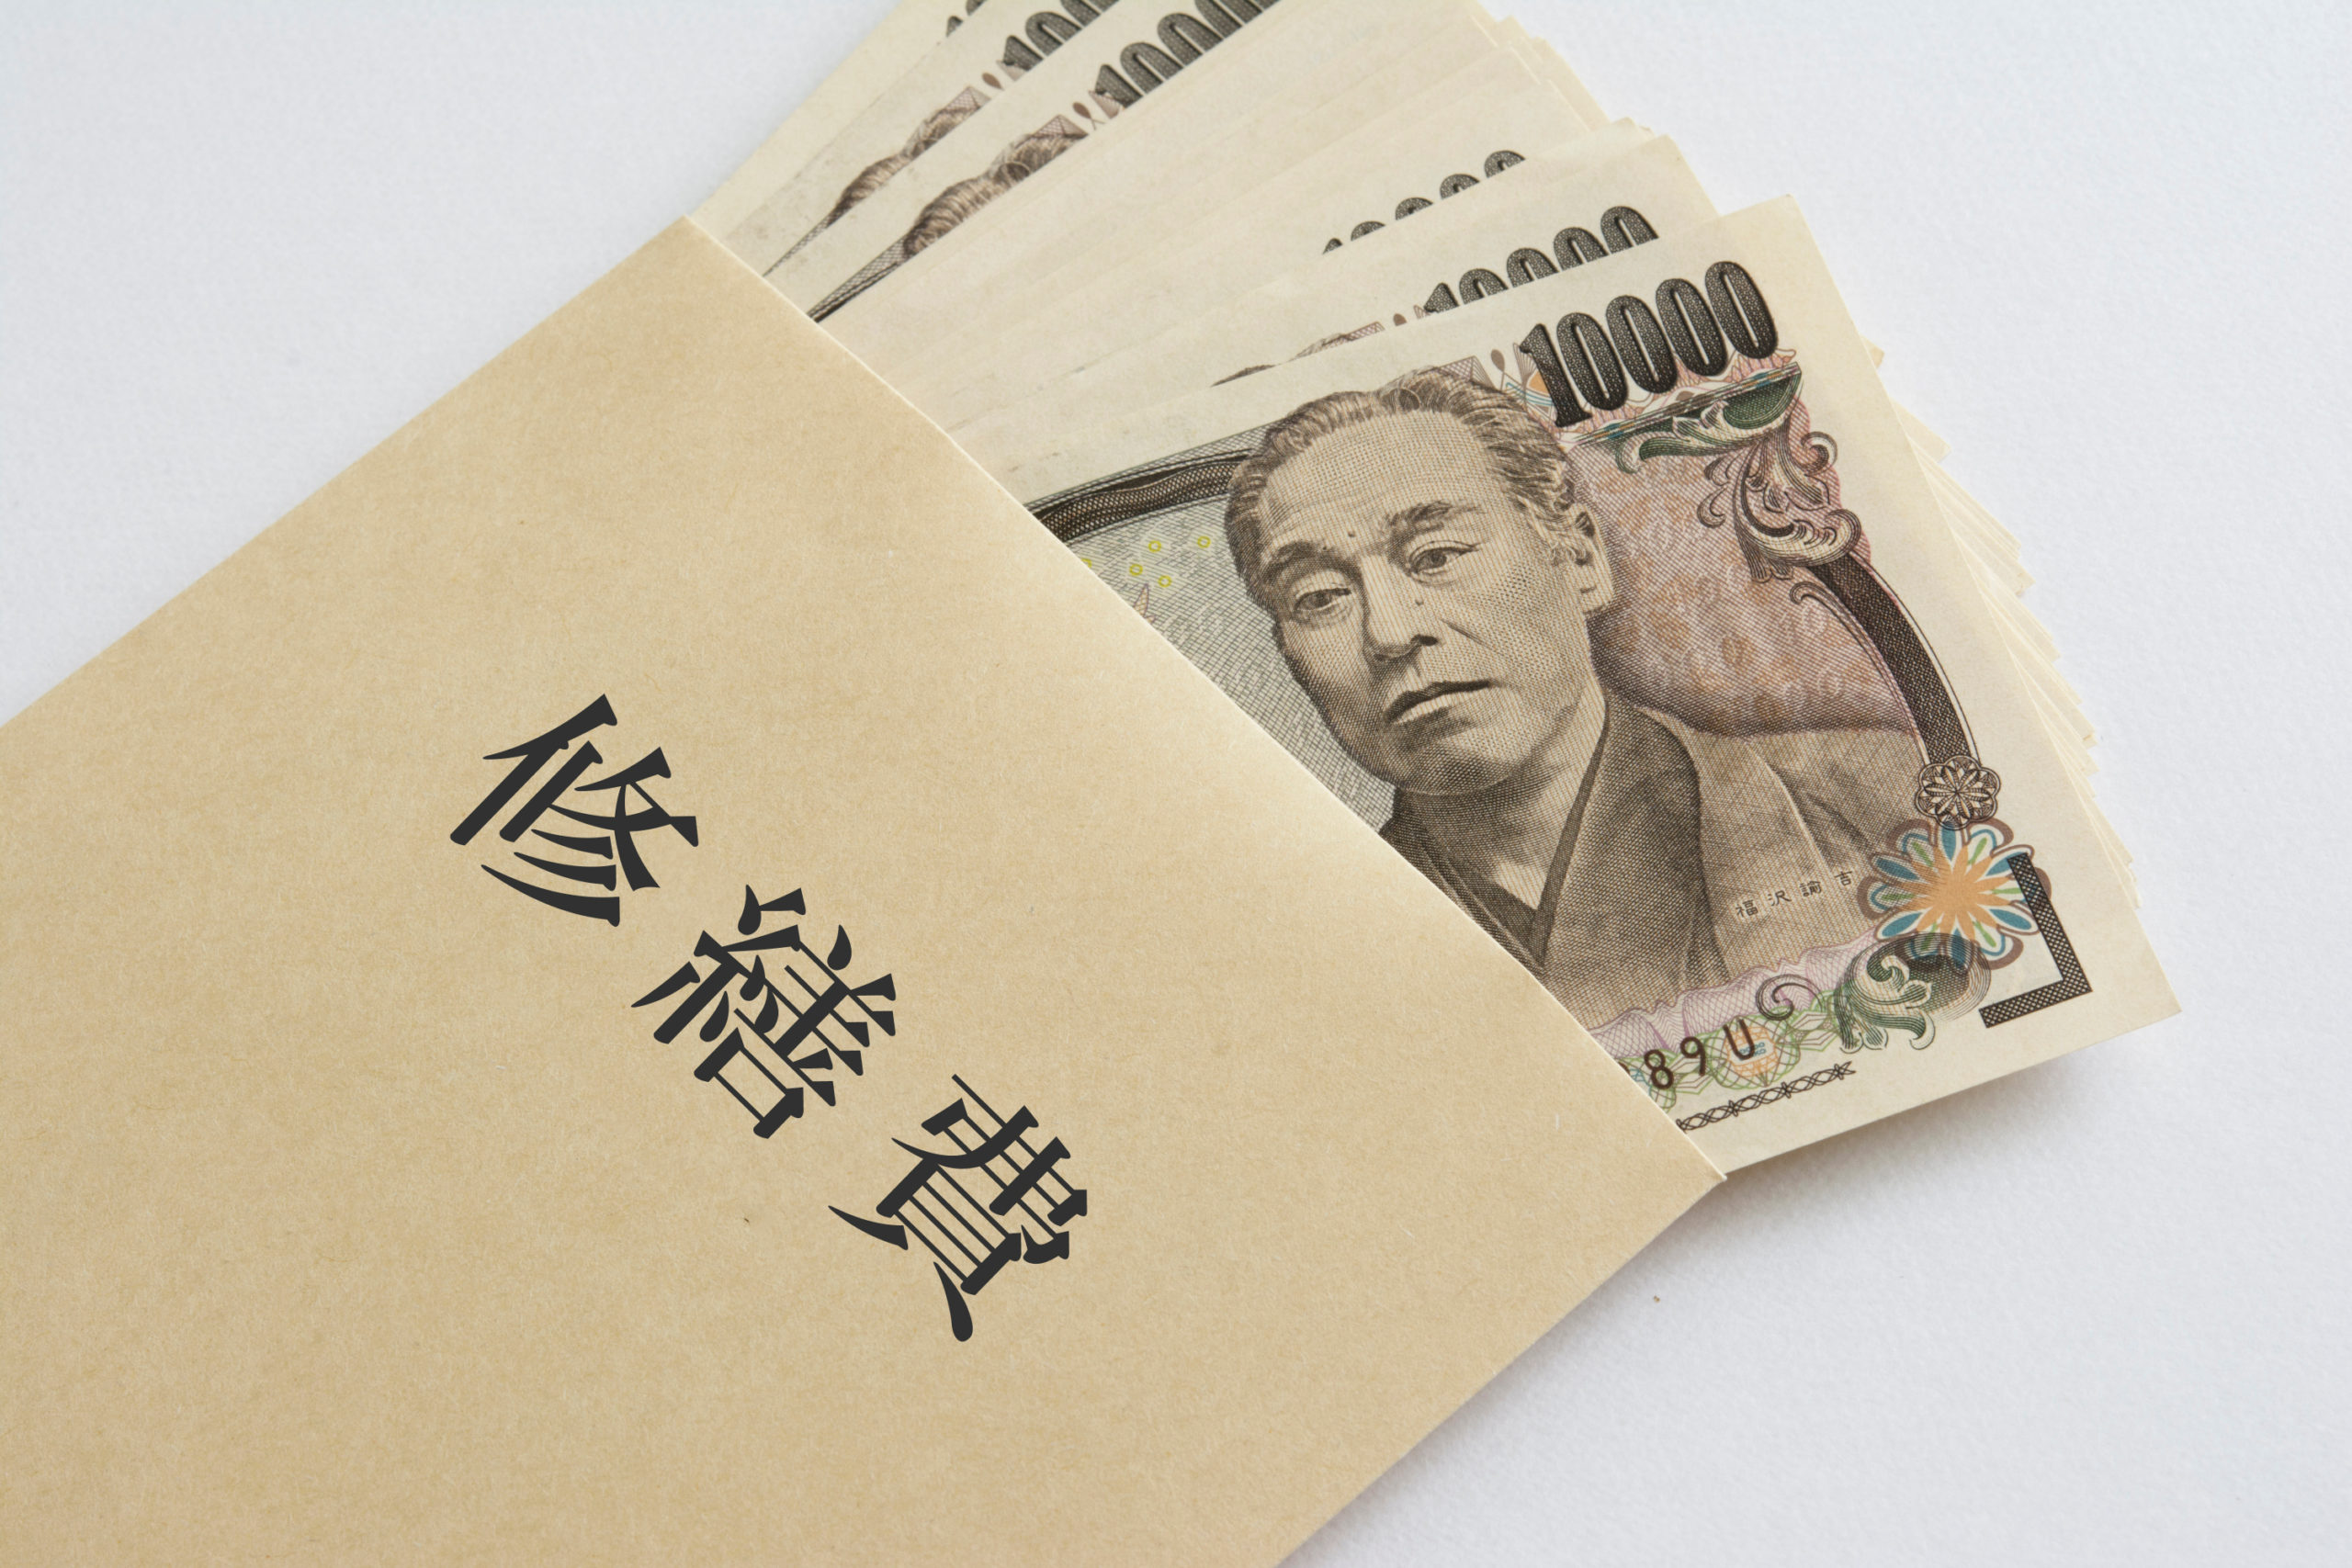 修繕費と書かれた封筒と沢山の１万円札